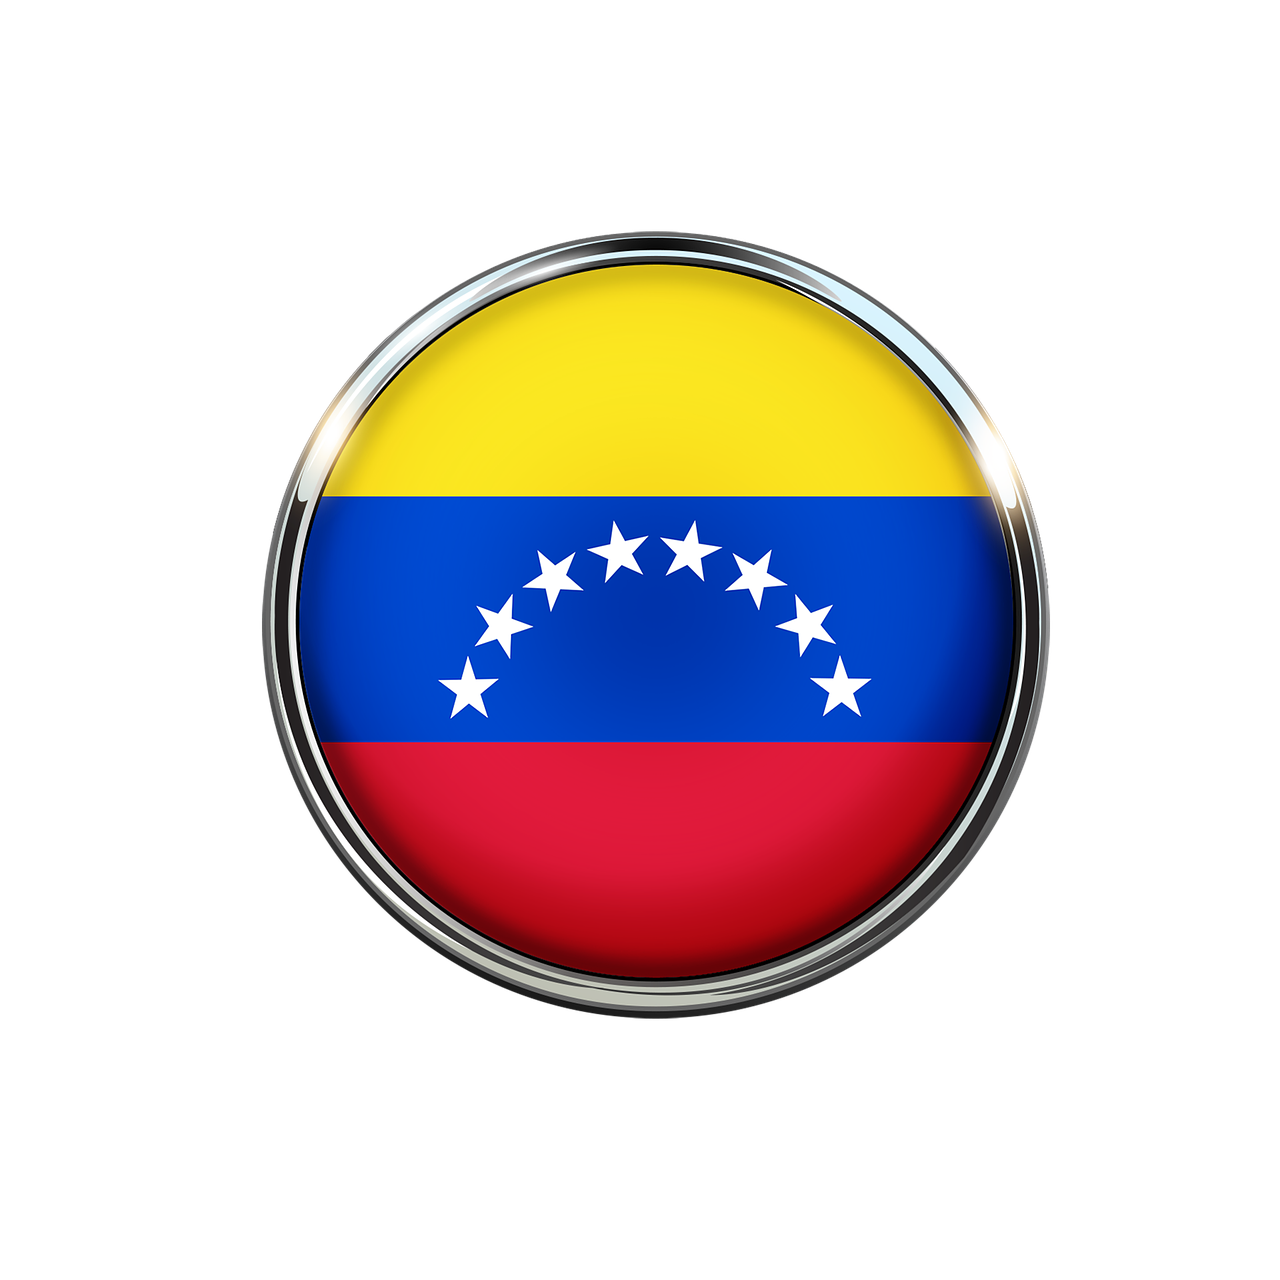 Conexión virtual: Conociendo gente en línea en Venezuela